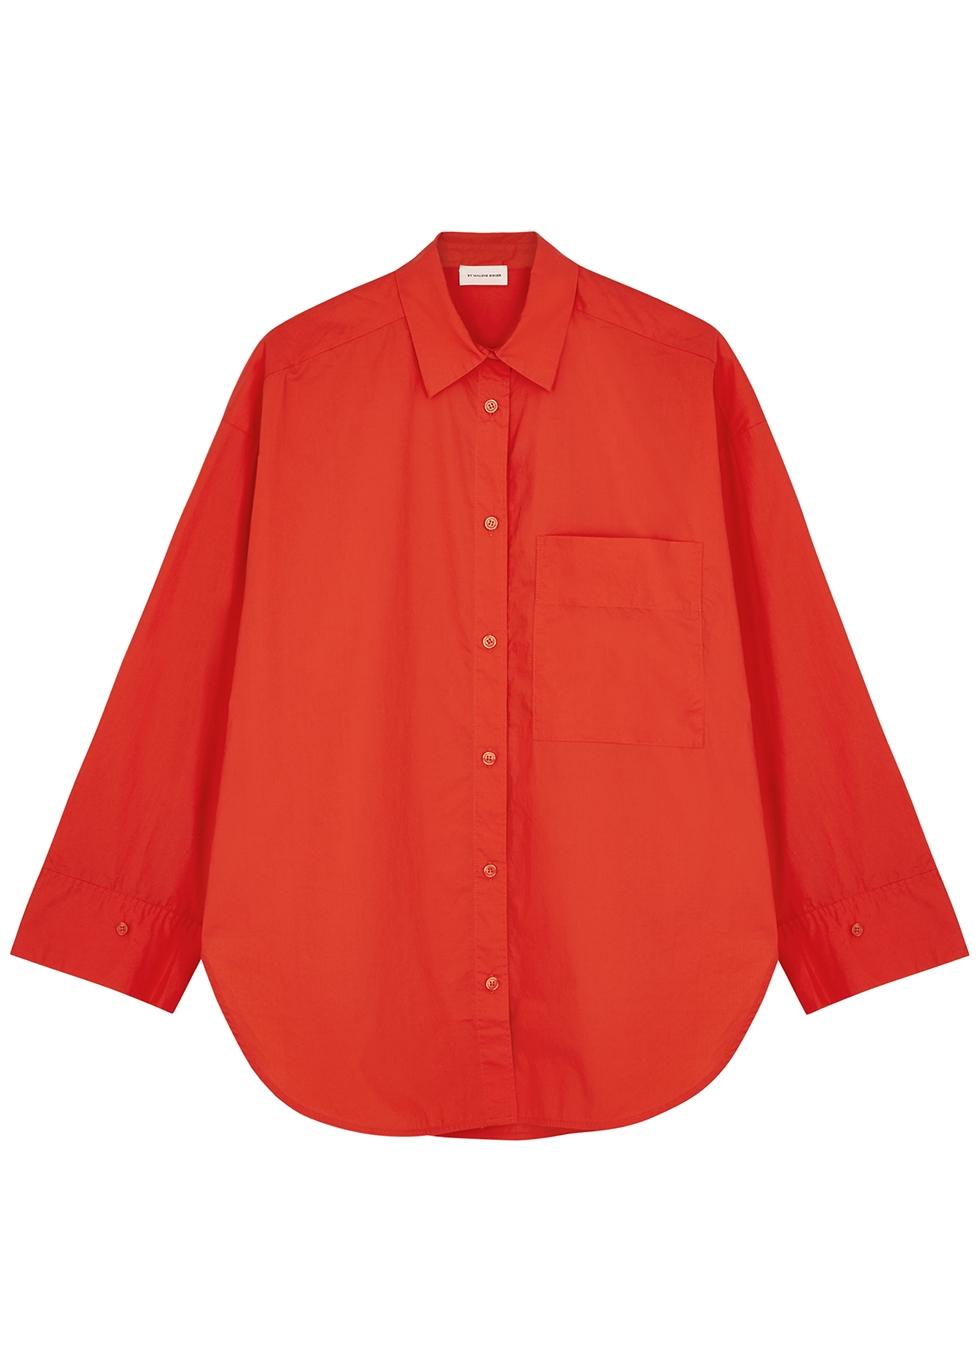 Angreb Bedre industri By Malene Birger Derris Cotton-poplin Shirt in Red | Lyst